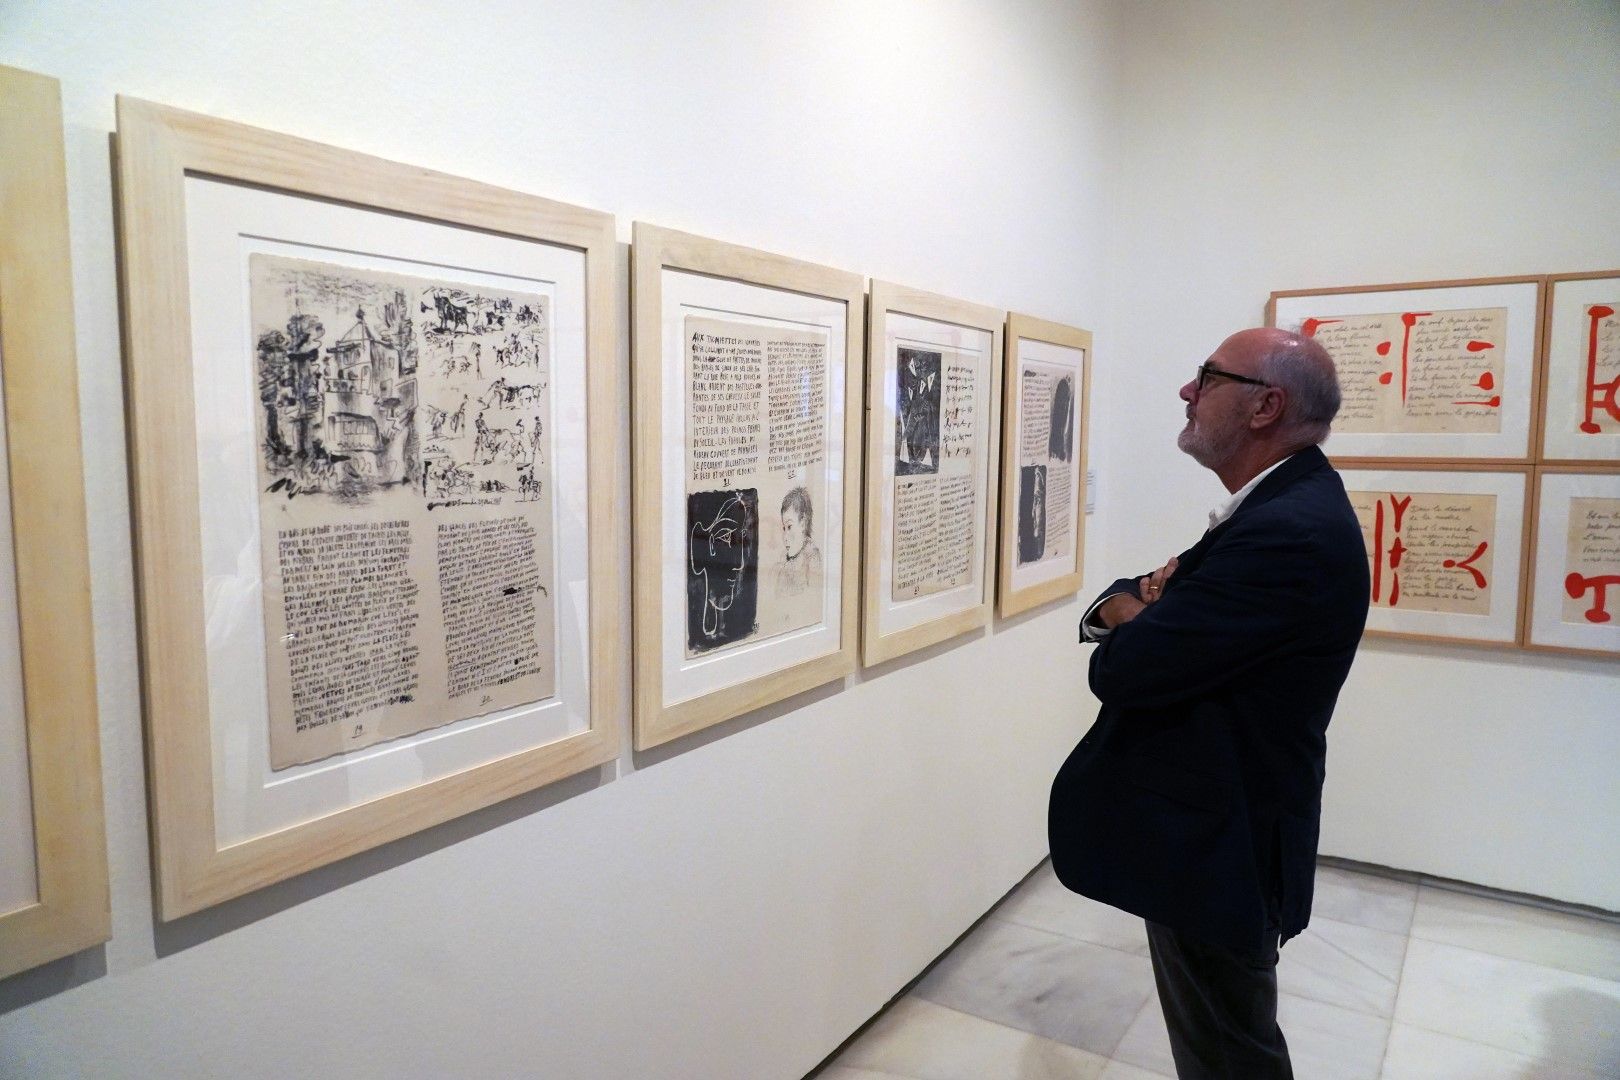 El Centro Cultural Fundación Unicaja Málaga inaugura una exposición con la poesía de Picasso